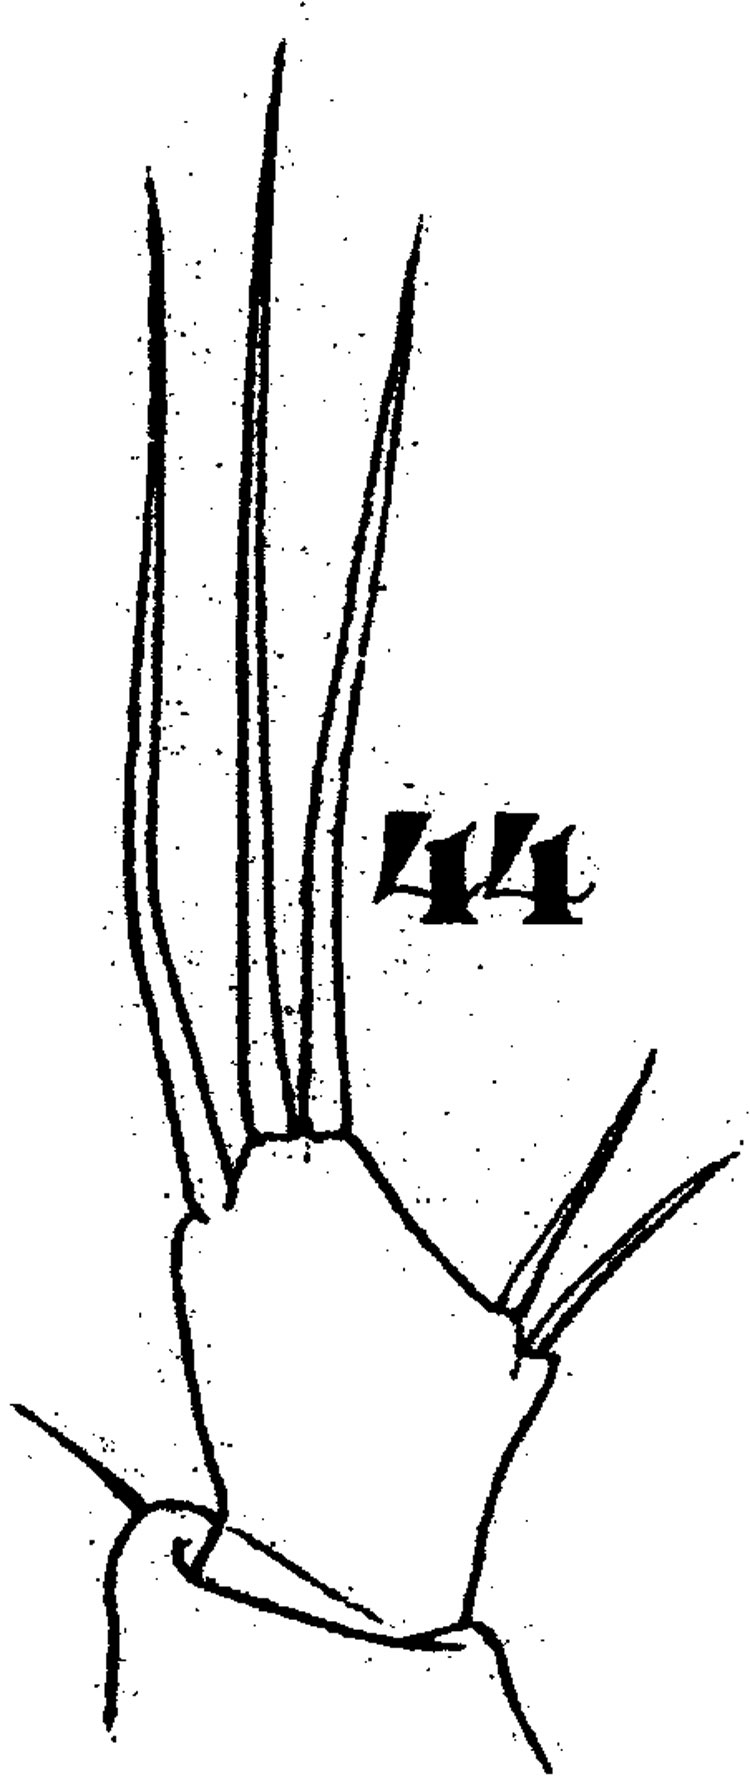 Espce Ratania flava - Planche 6 de figures morphologiques